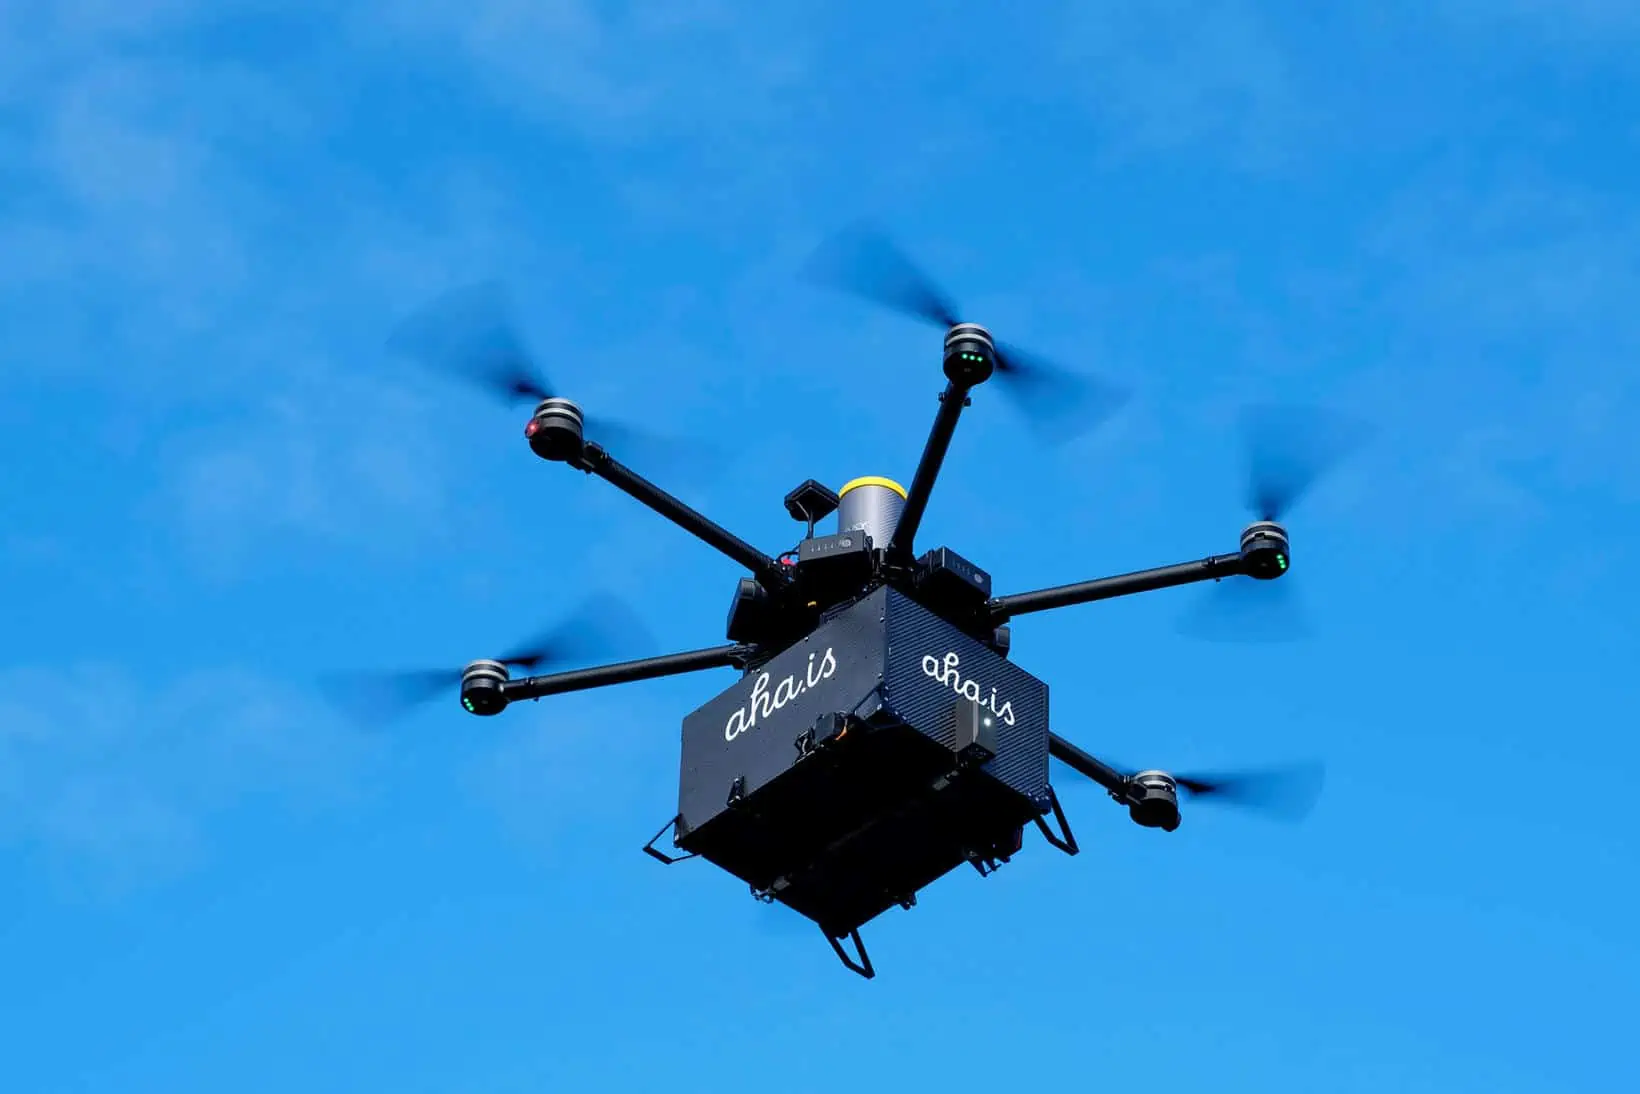 Olimpiadi 2026: pronti i droni per trasportare merci